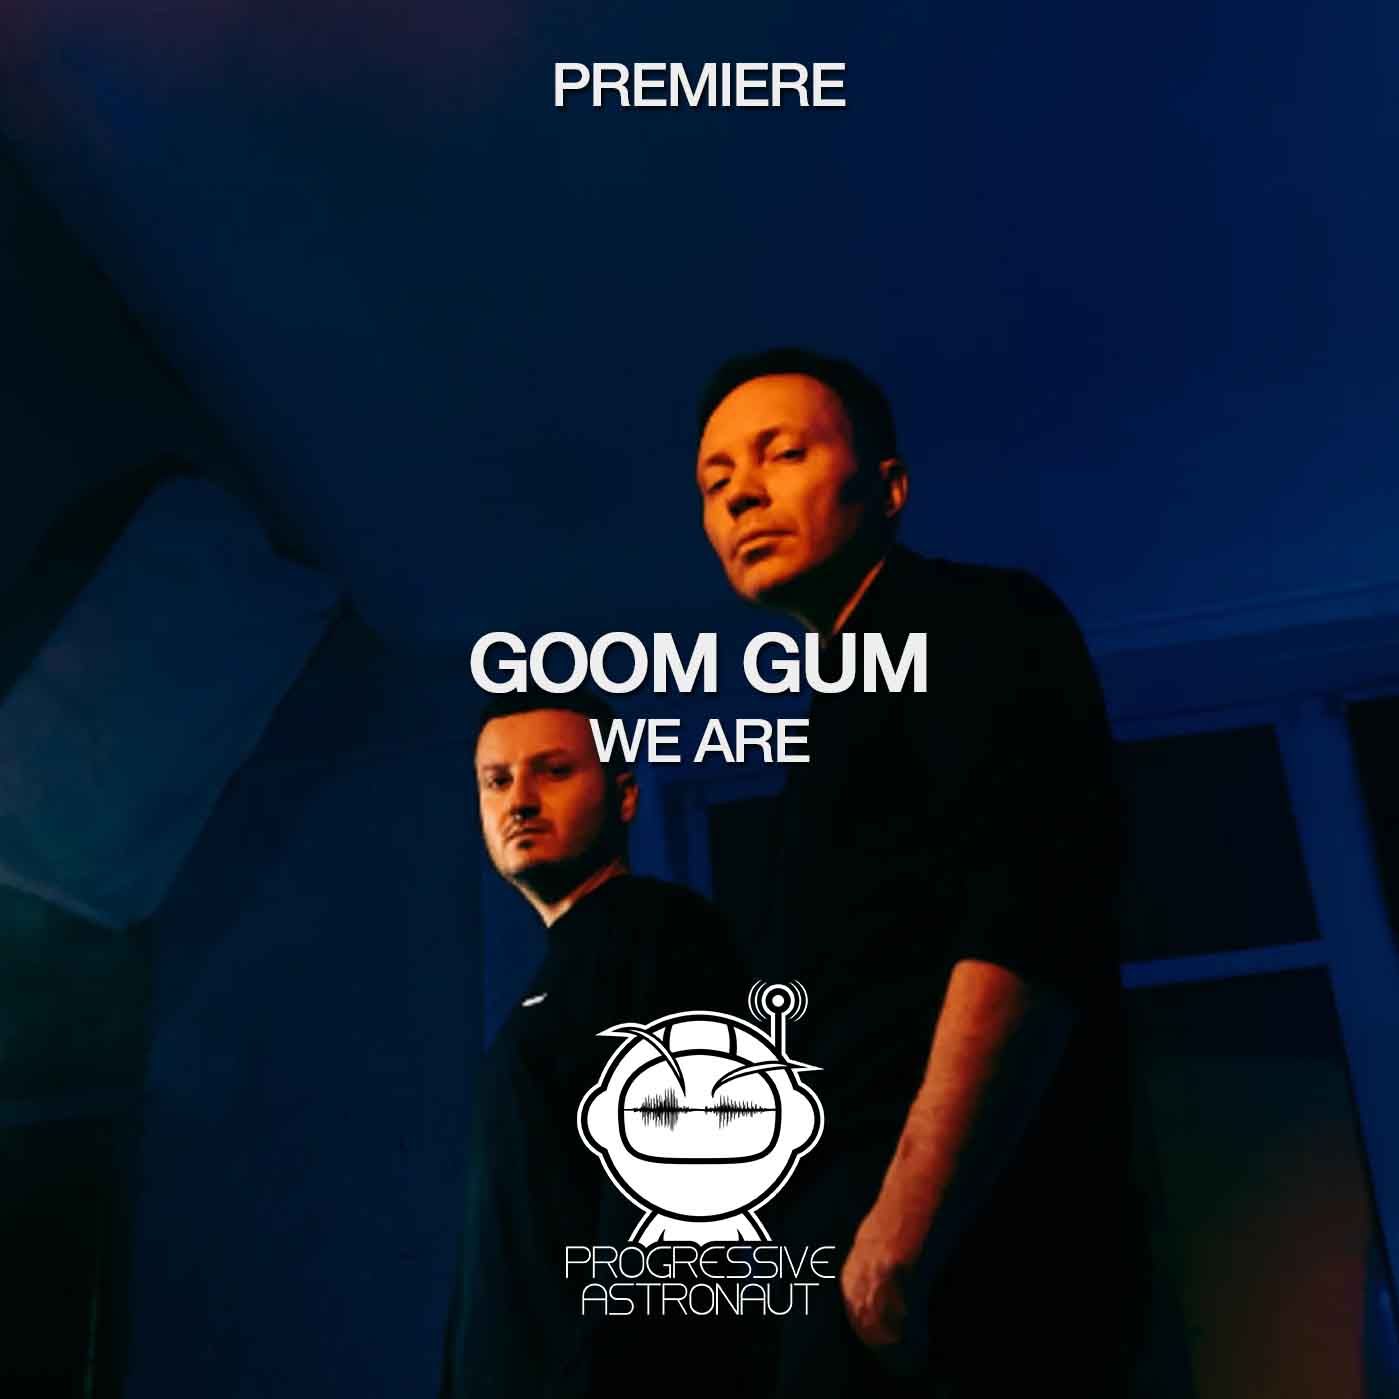 ดาวน์โหลด PREMIERE: Goom Gum - We Are (Original Mix) [Avtook Records]